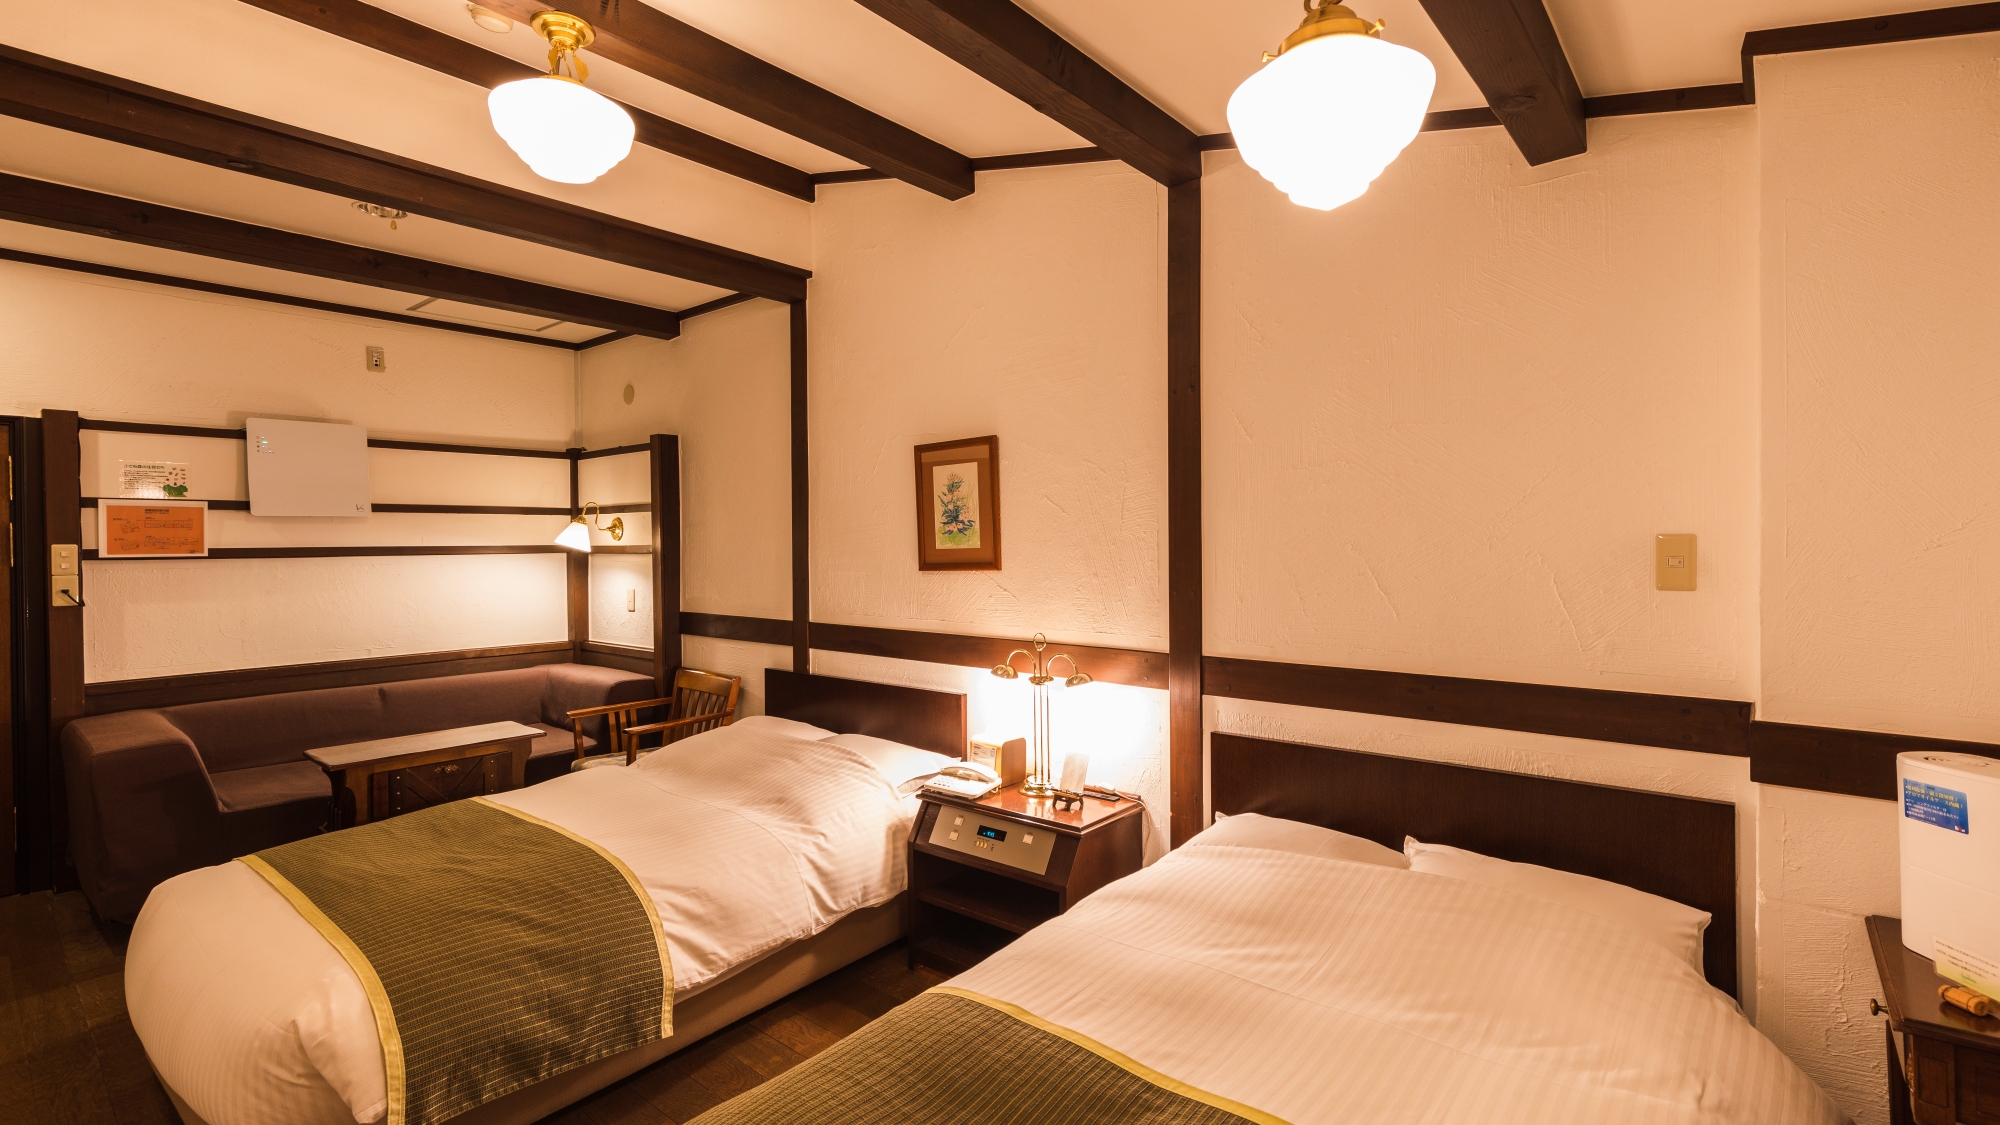 【スタンダードツイン】八甲田の四季を望む、やさしく落ち着いた雰囲気の洋室のお部屋です。